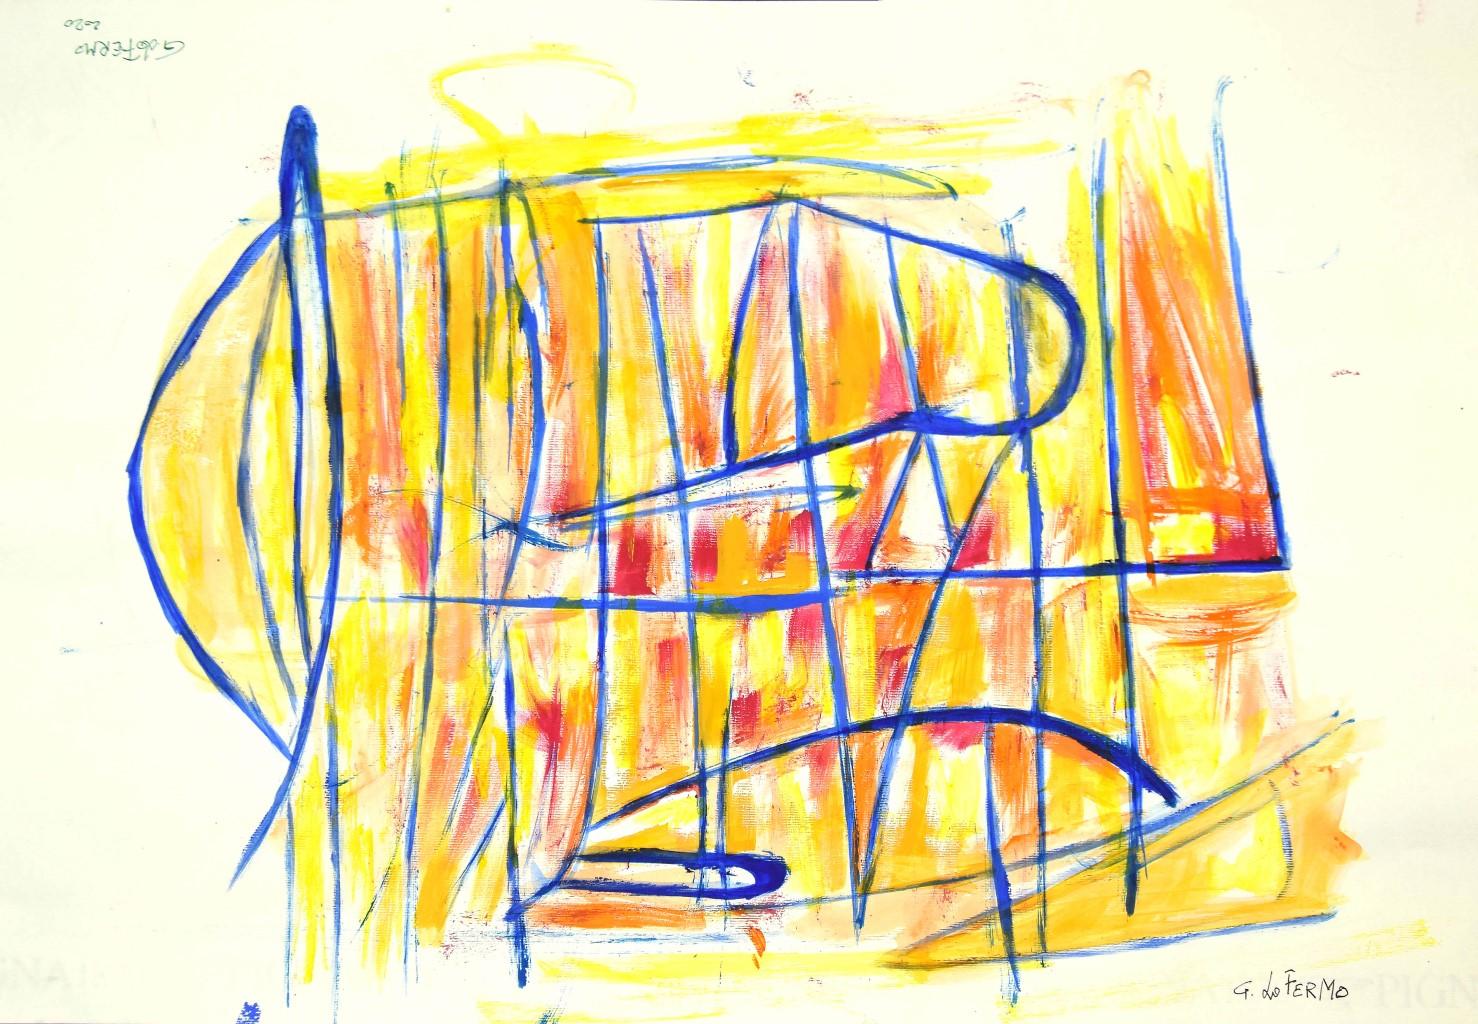 Giorgio Lo Fermo Abstract Painting – Geometrische abstrakte Komposition - Mischtechnik auf Papier von G. Lo Fermo - 2020